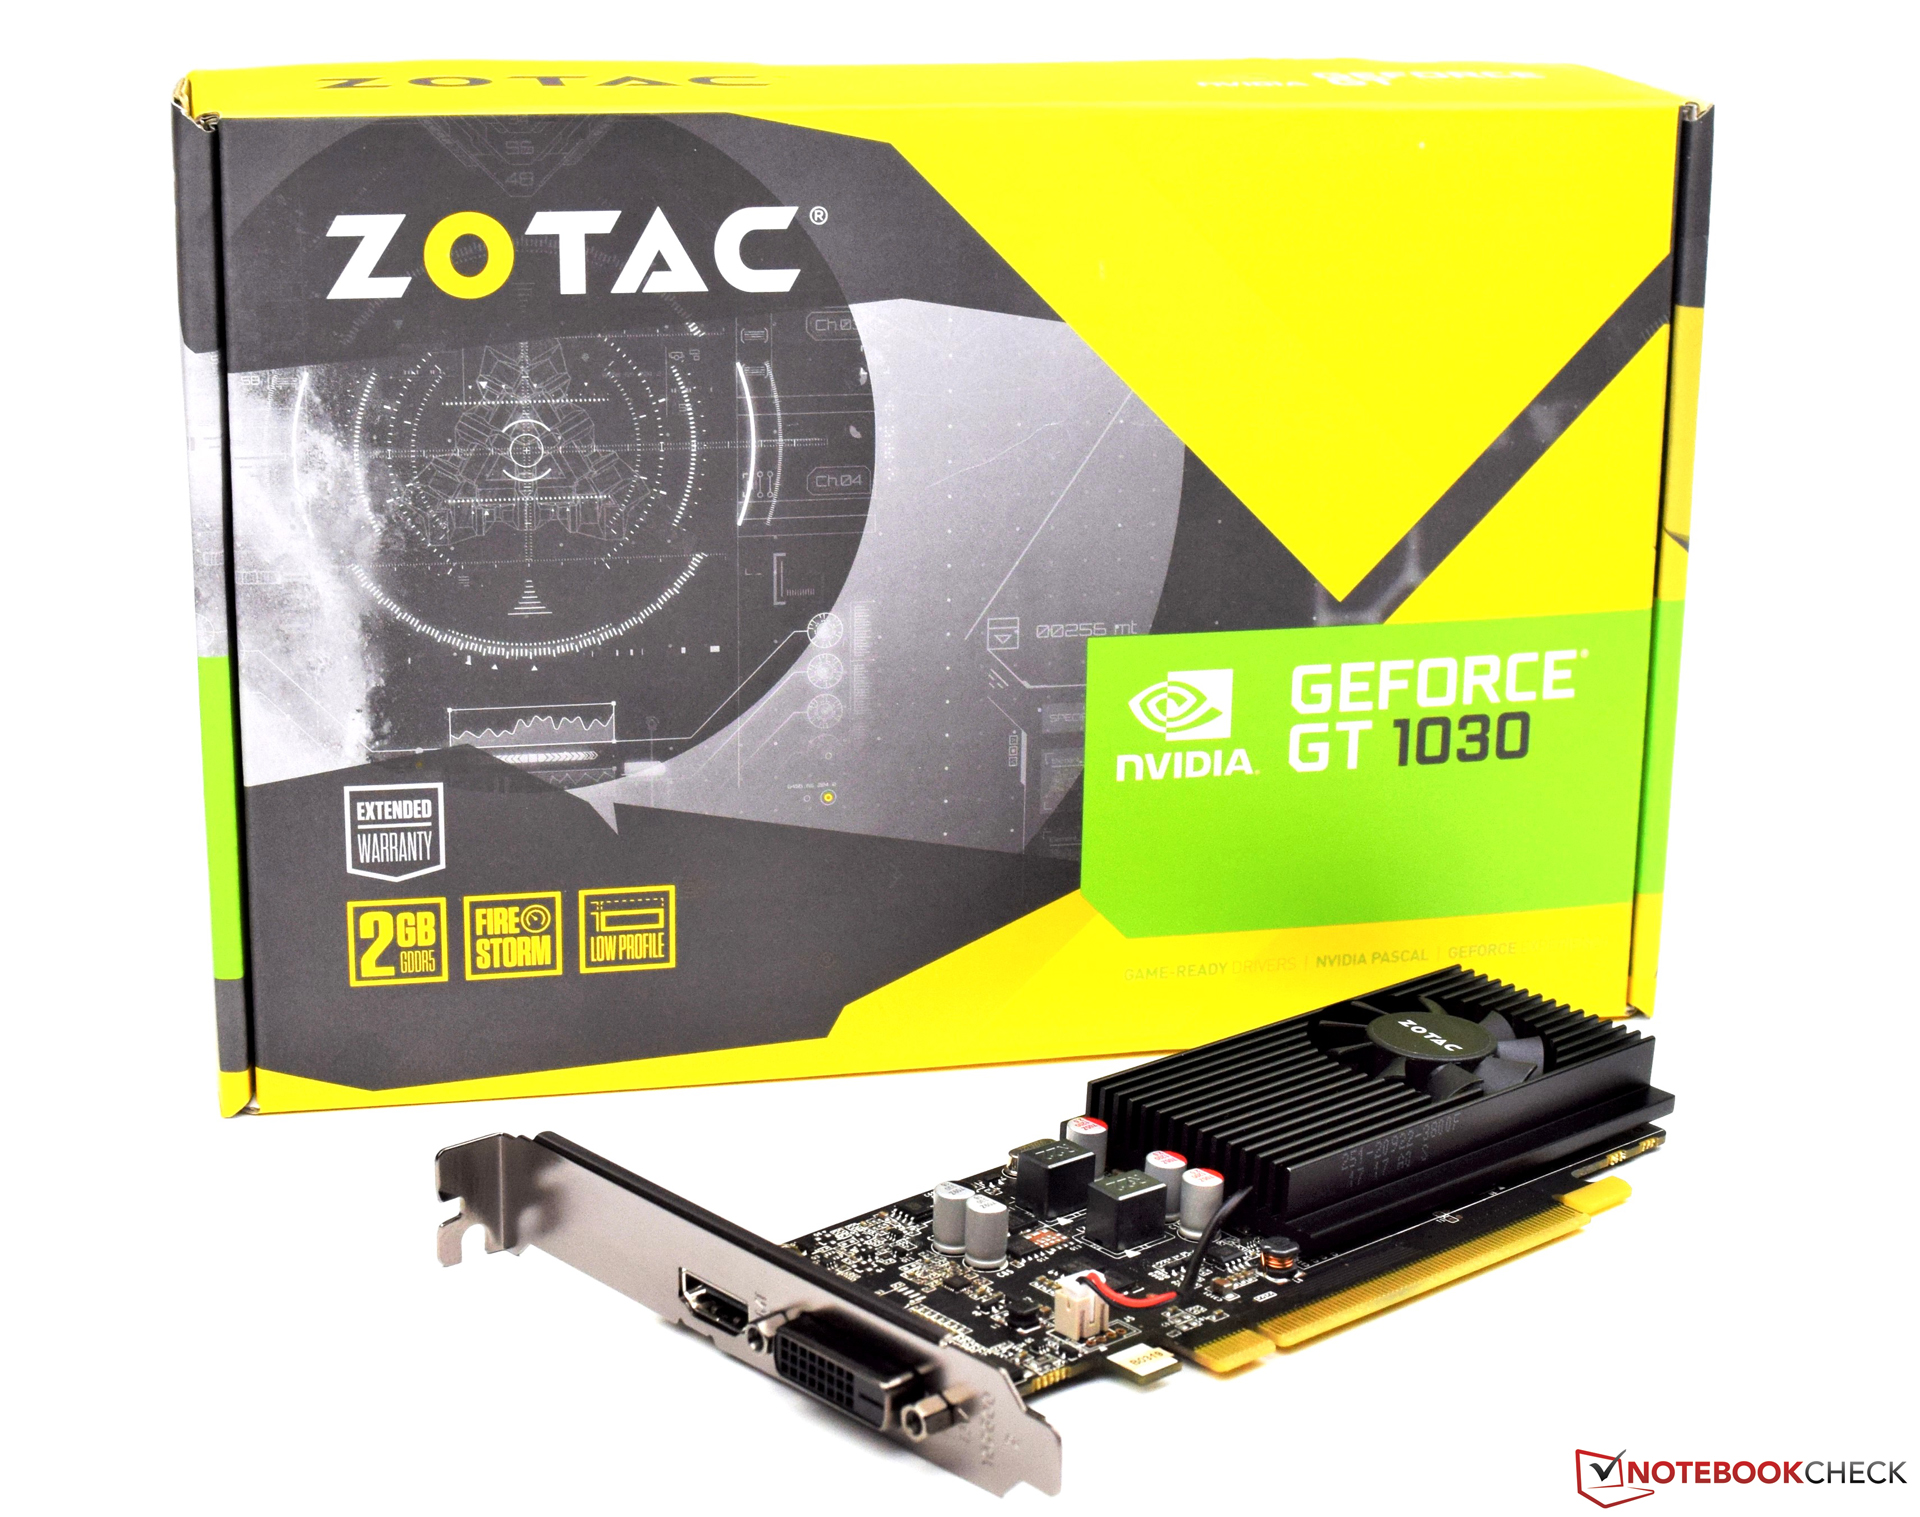 Zotac GeForce GT 1030 Review - NotebookCheck.net Reviews